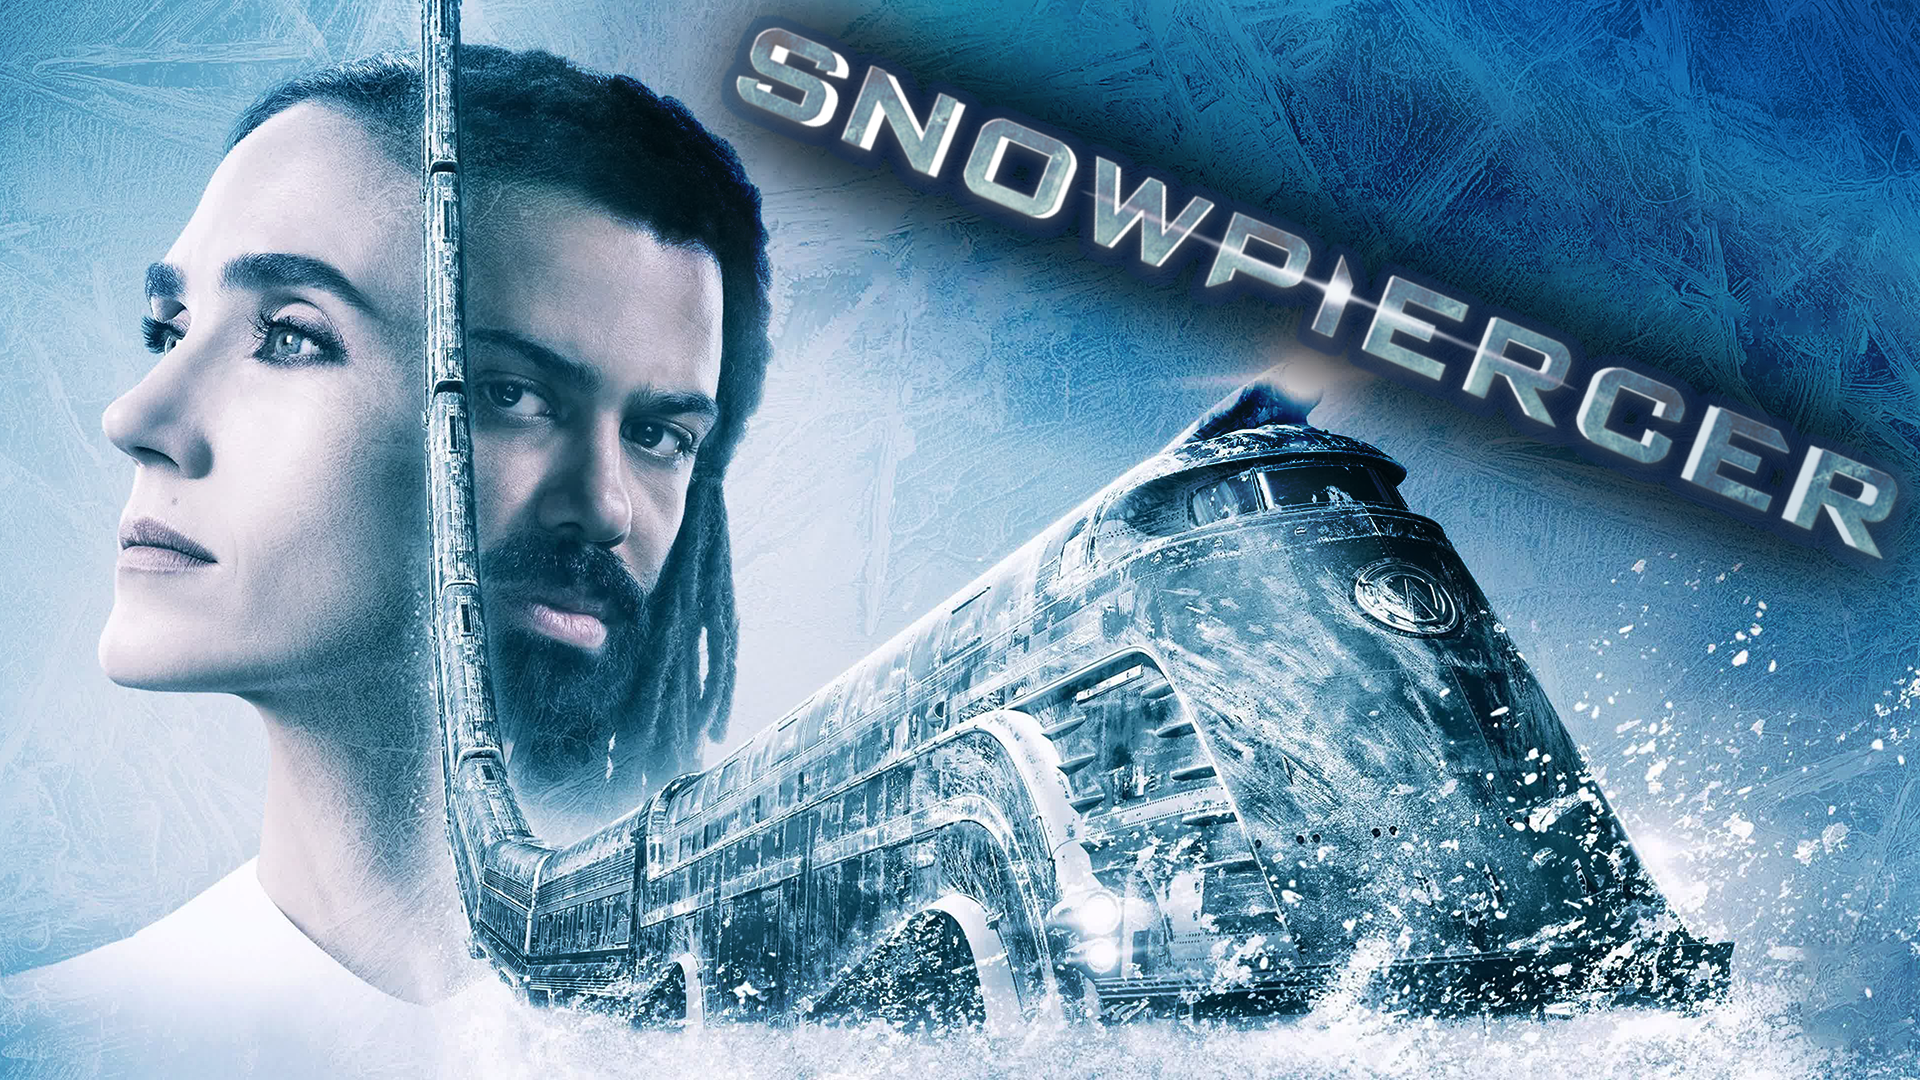 Сквозь снег – 2 сезон 4 серия / Snowpiercer